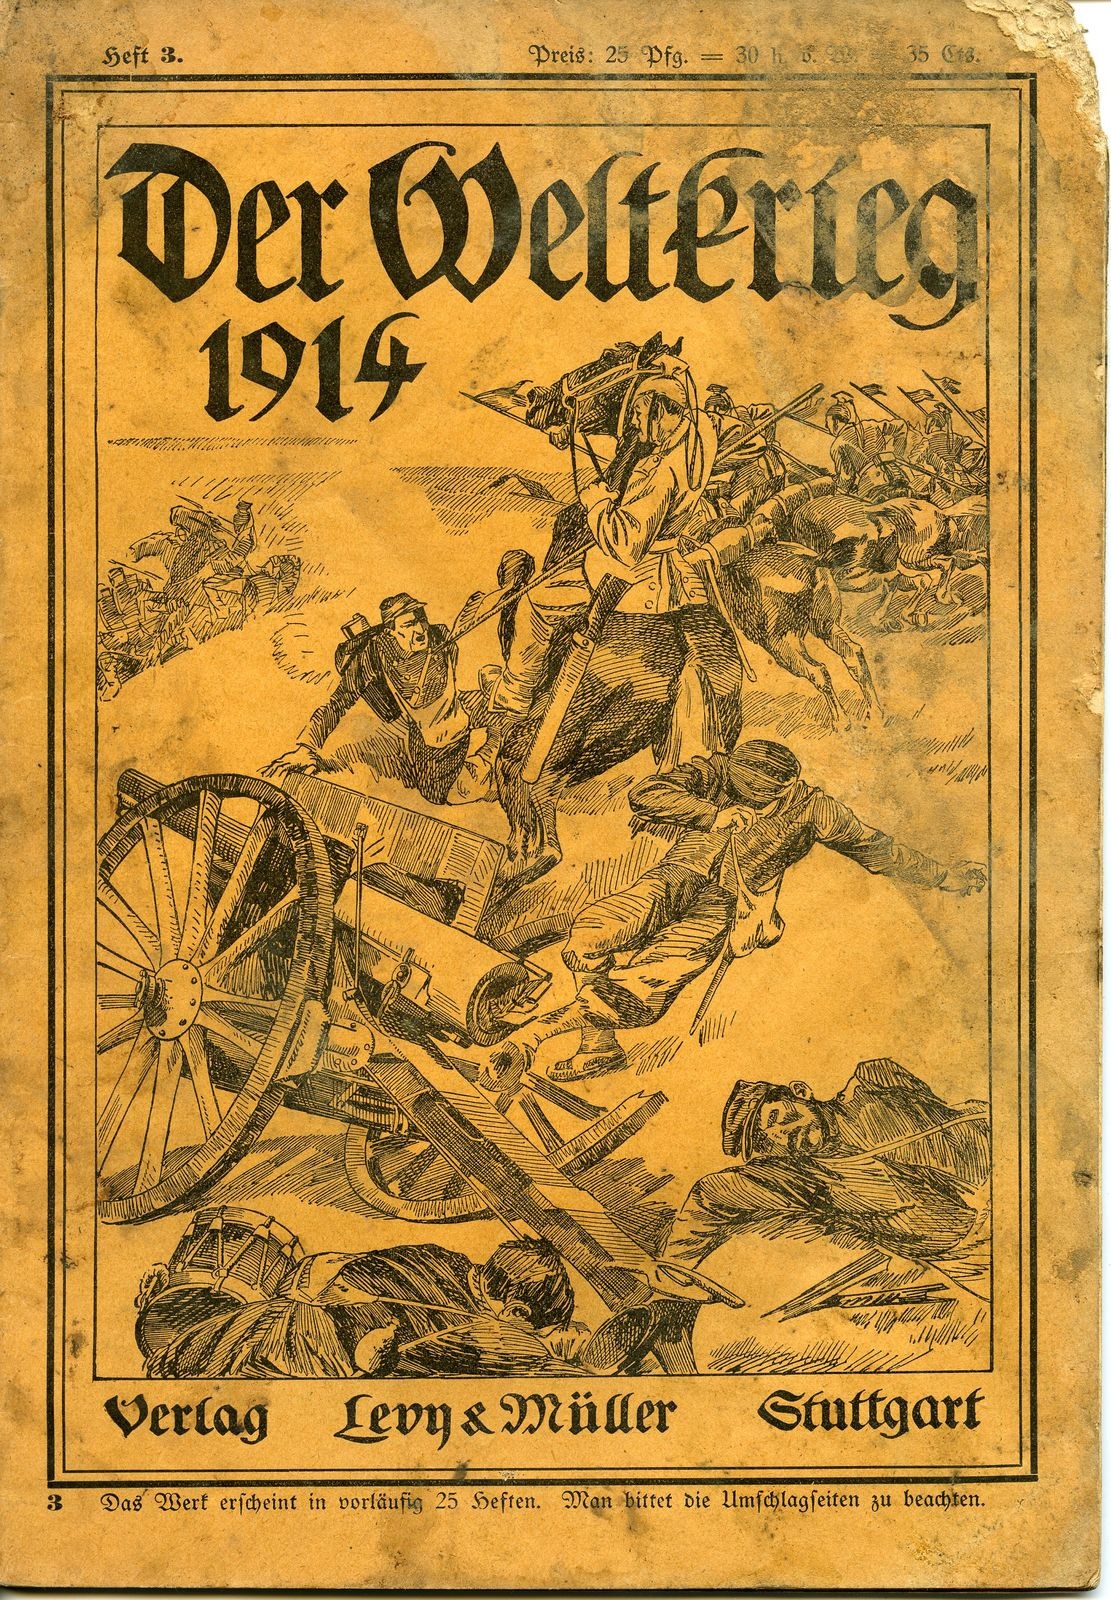 Zeitschrift "Der Weltkrieg 1914", Heft 3 (Historisches Museum der Pfalz, Speyer CC BY)